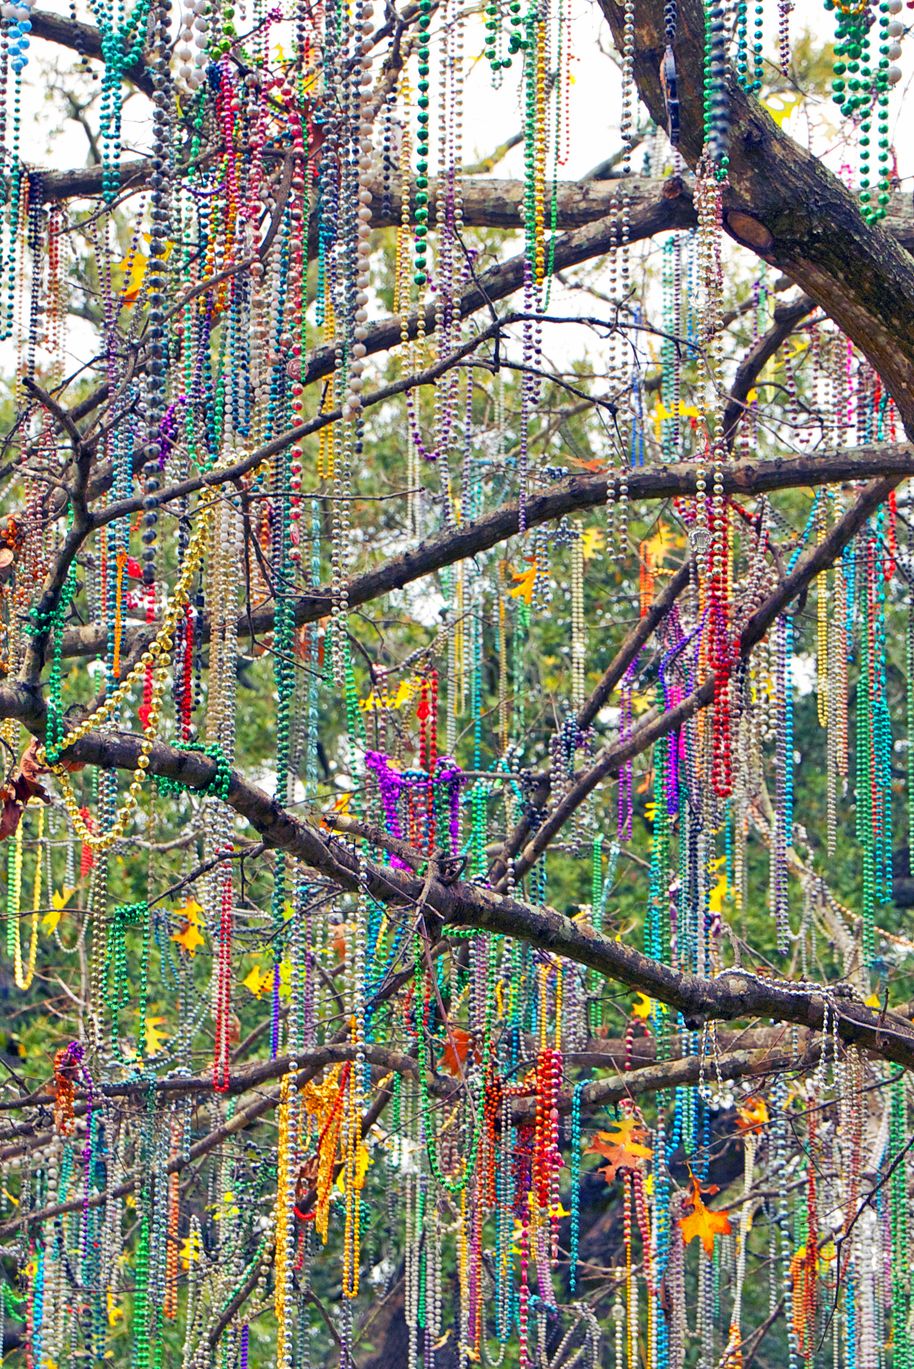 The Mardi Gras Tree